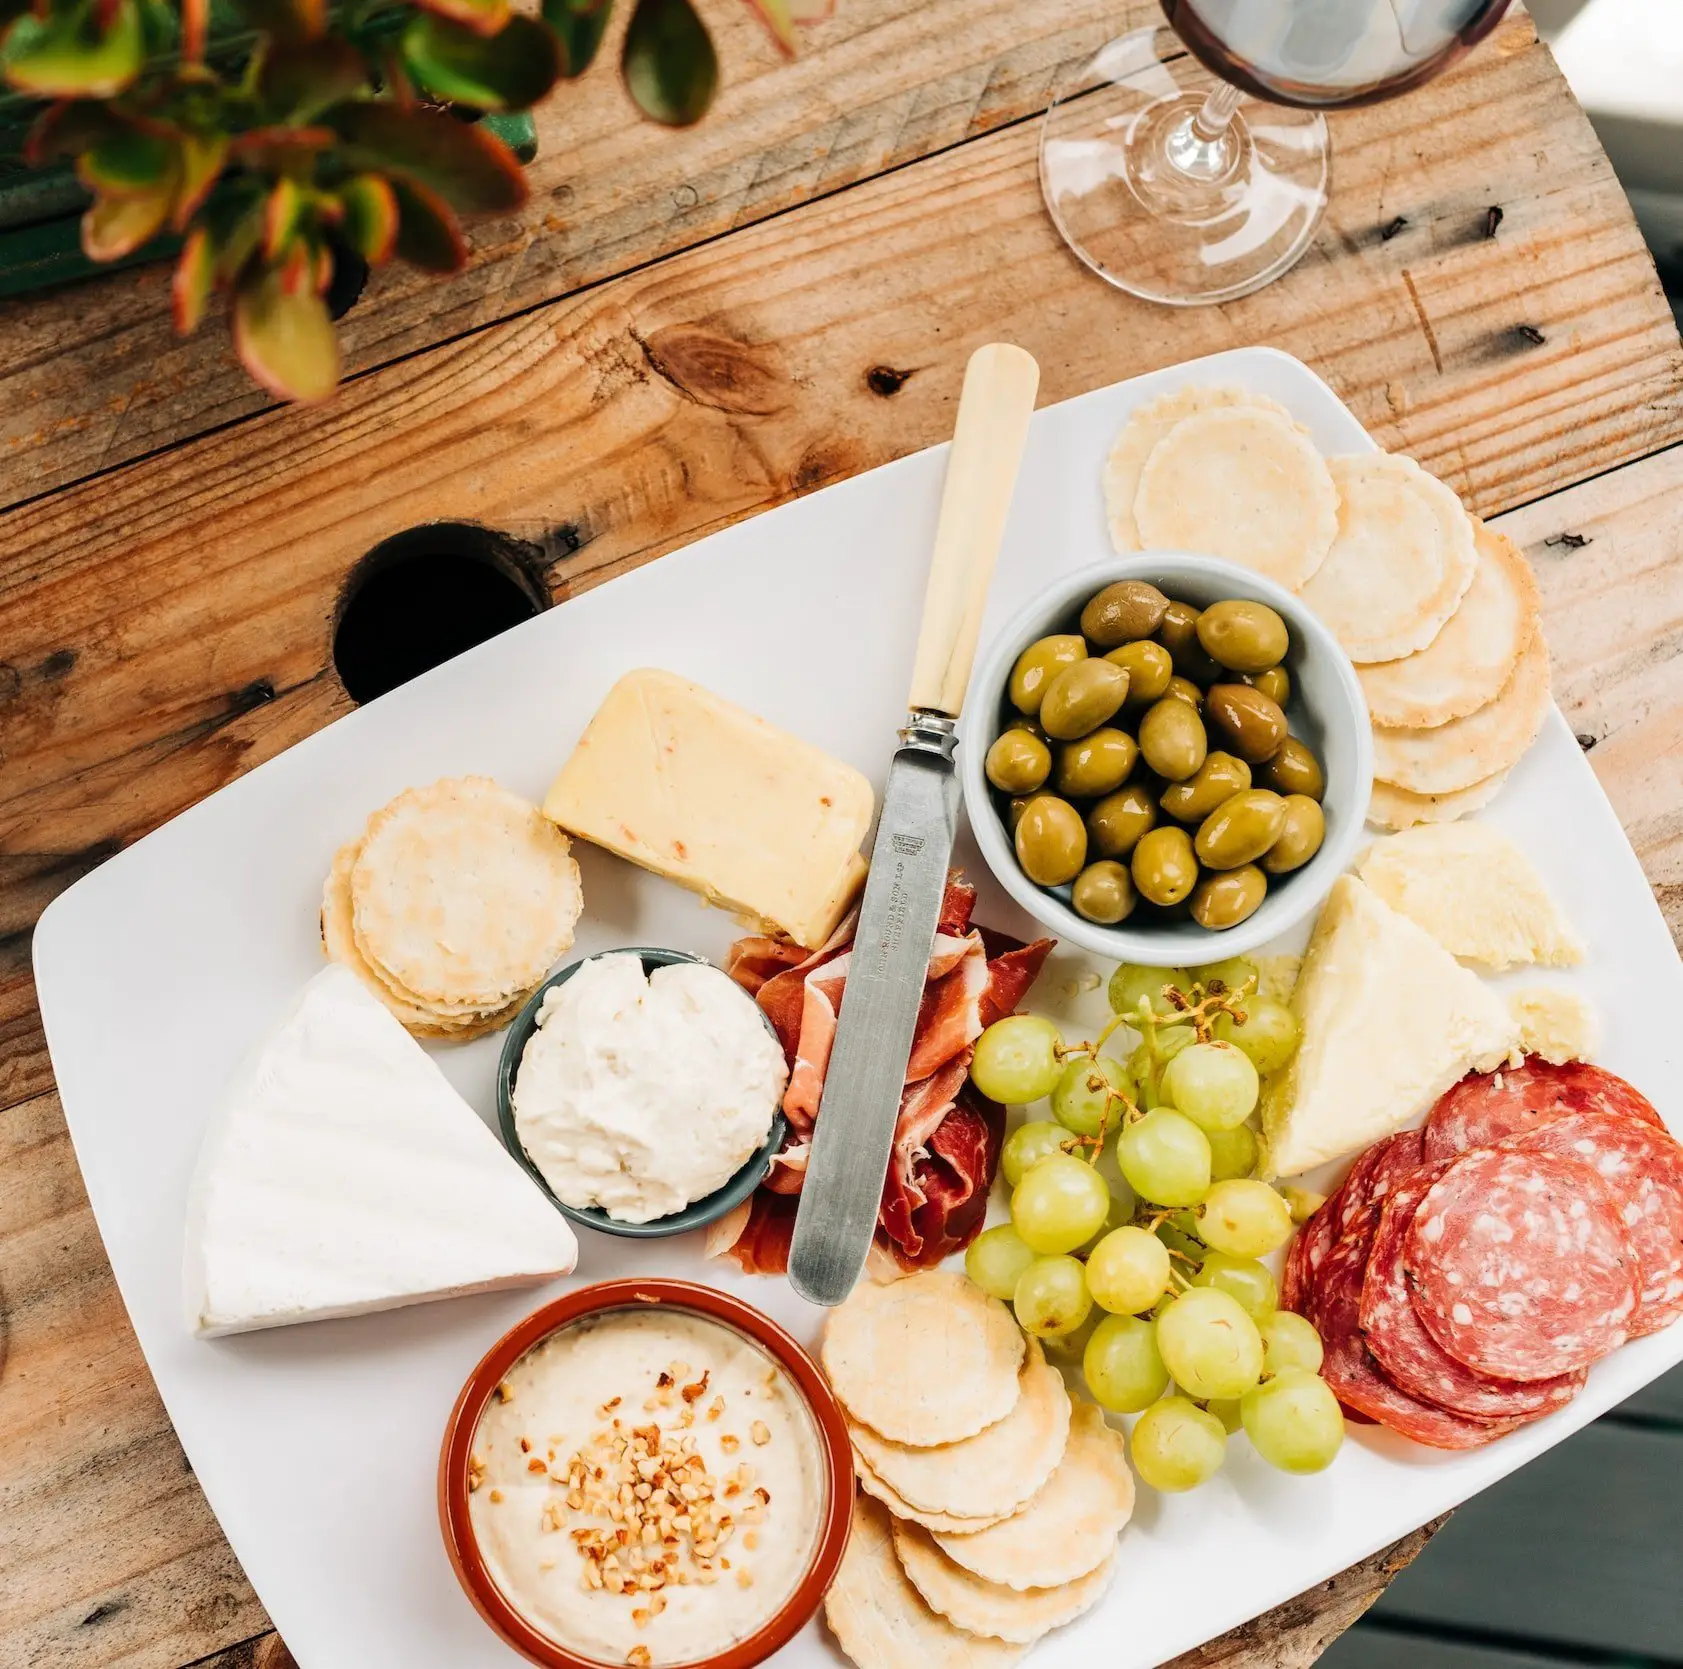 white wine tasting food ideas-olives